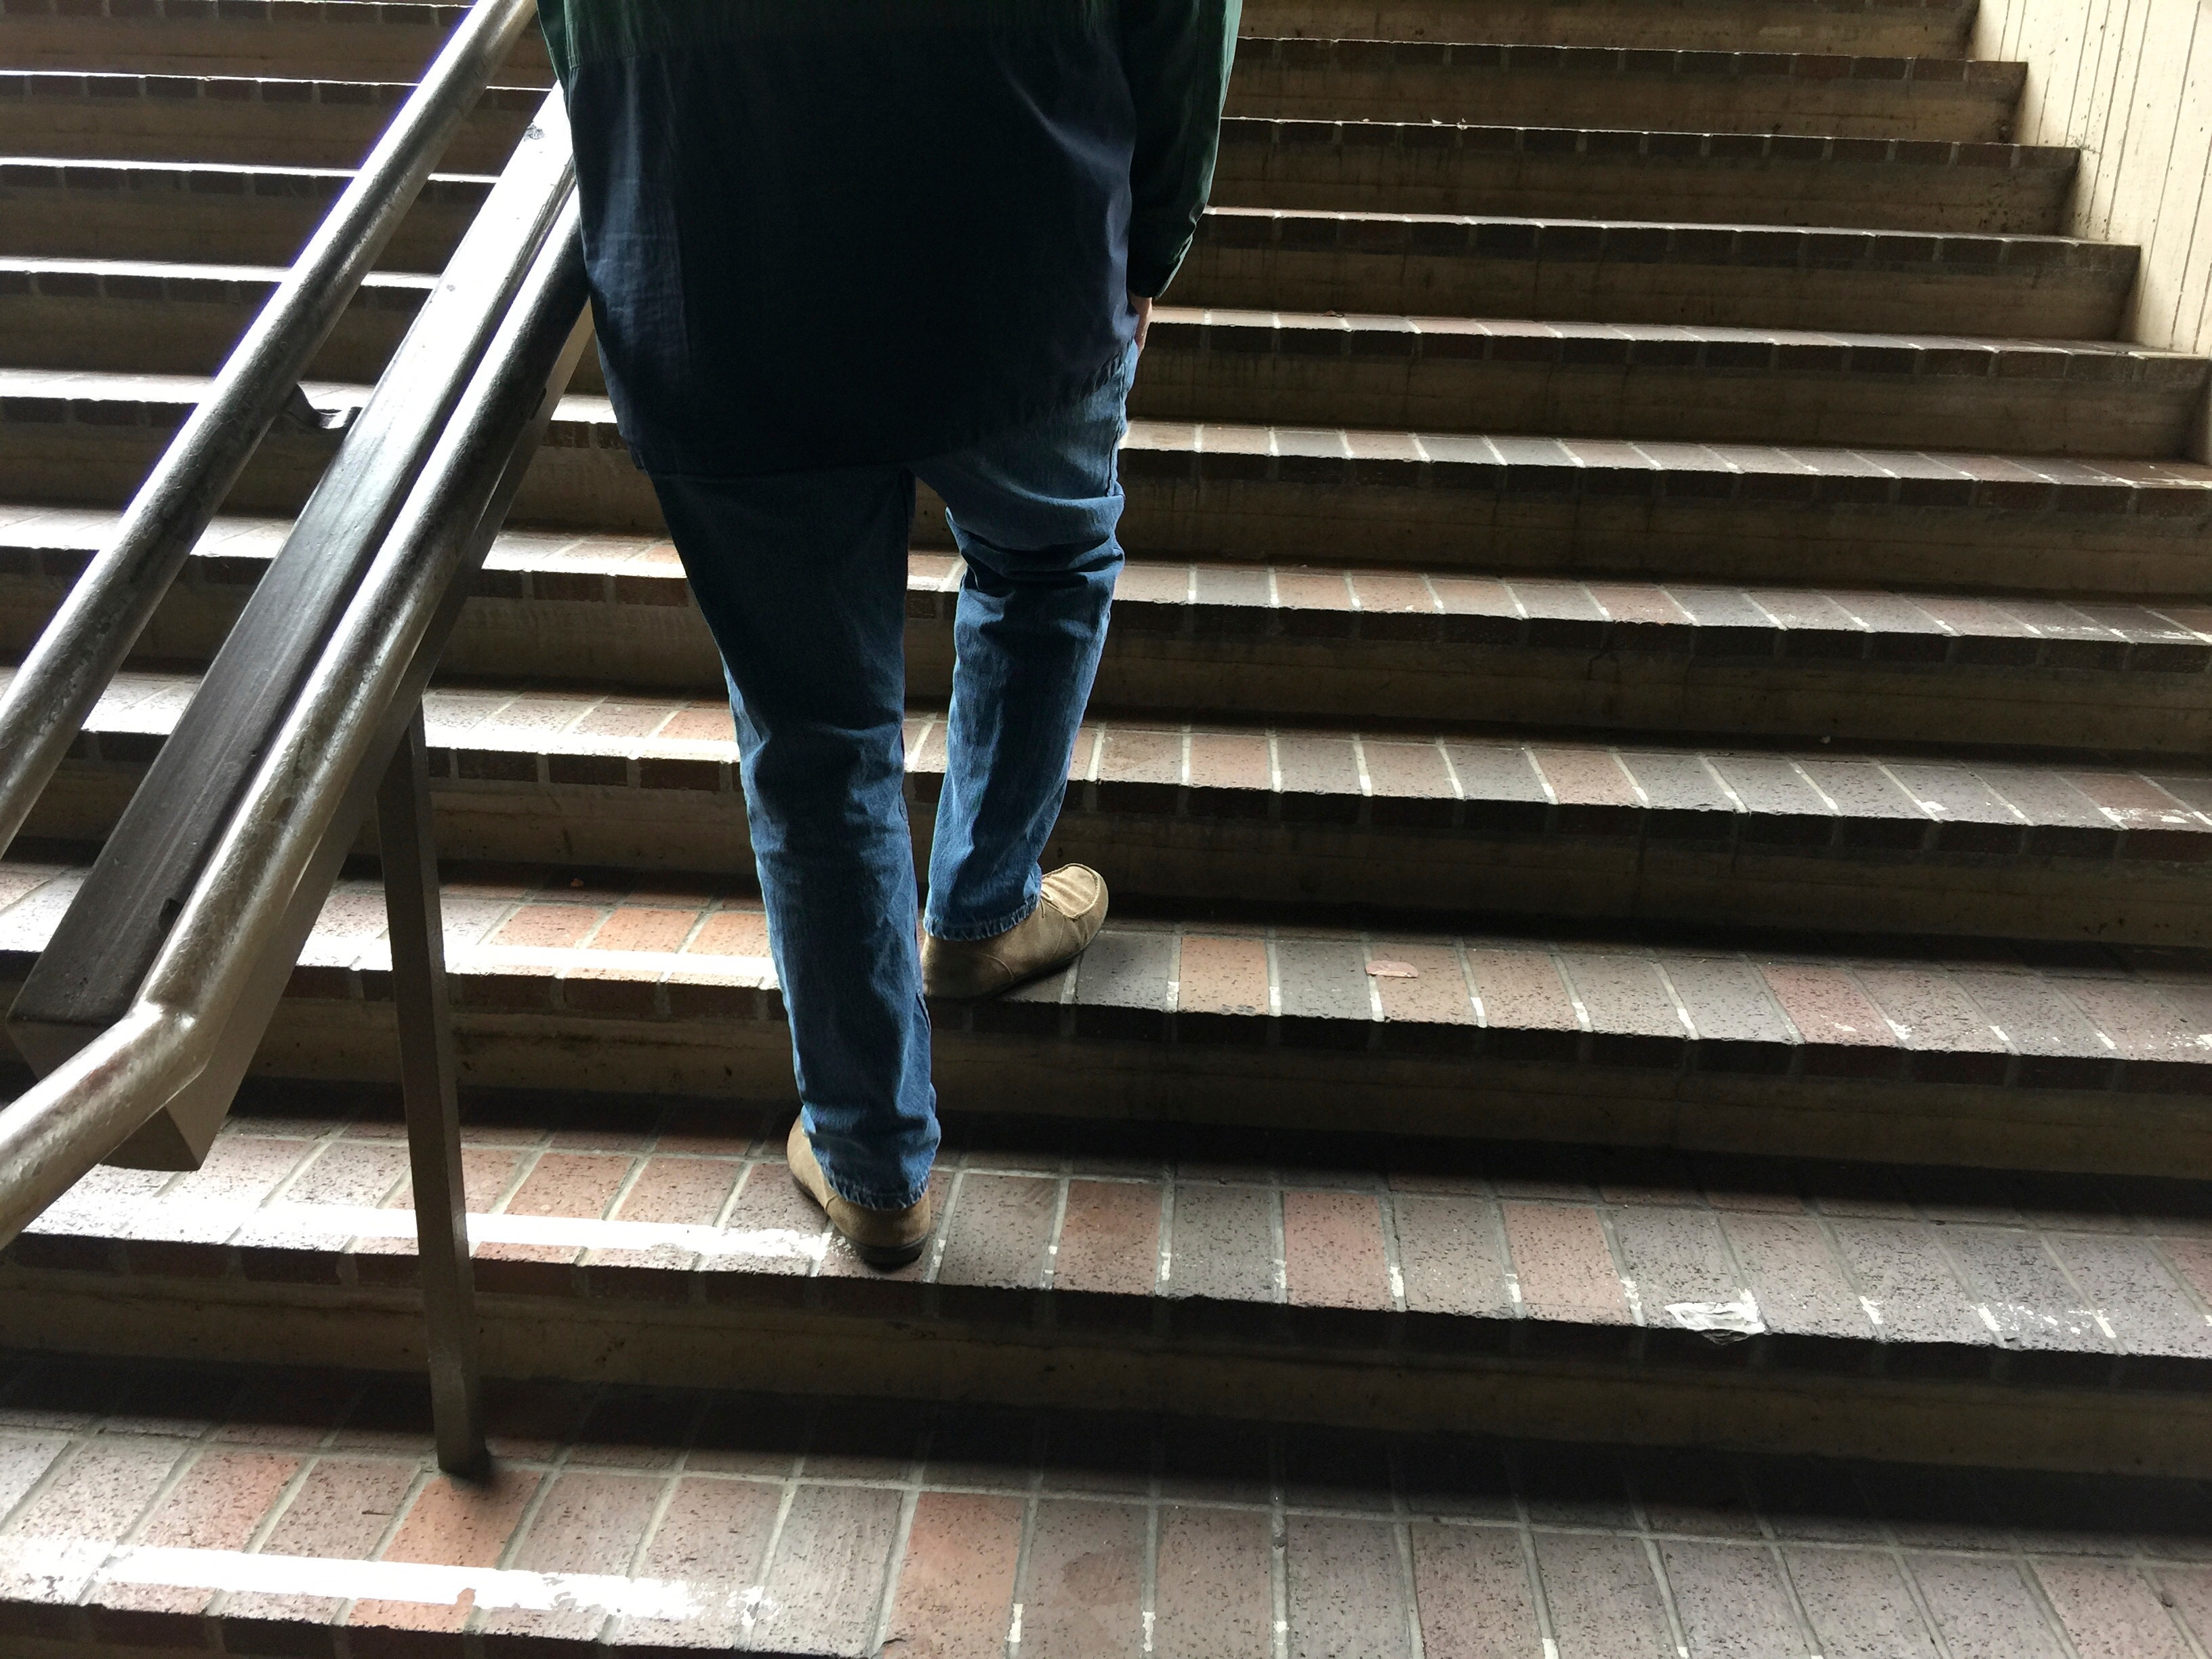 Подниматься по лестнице в подъезде. Человек на ступеньках. Человек на лестнице. Парень спускается по лестнице. Ноги идут по ступенькам.